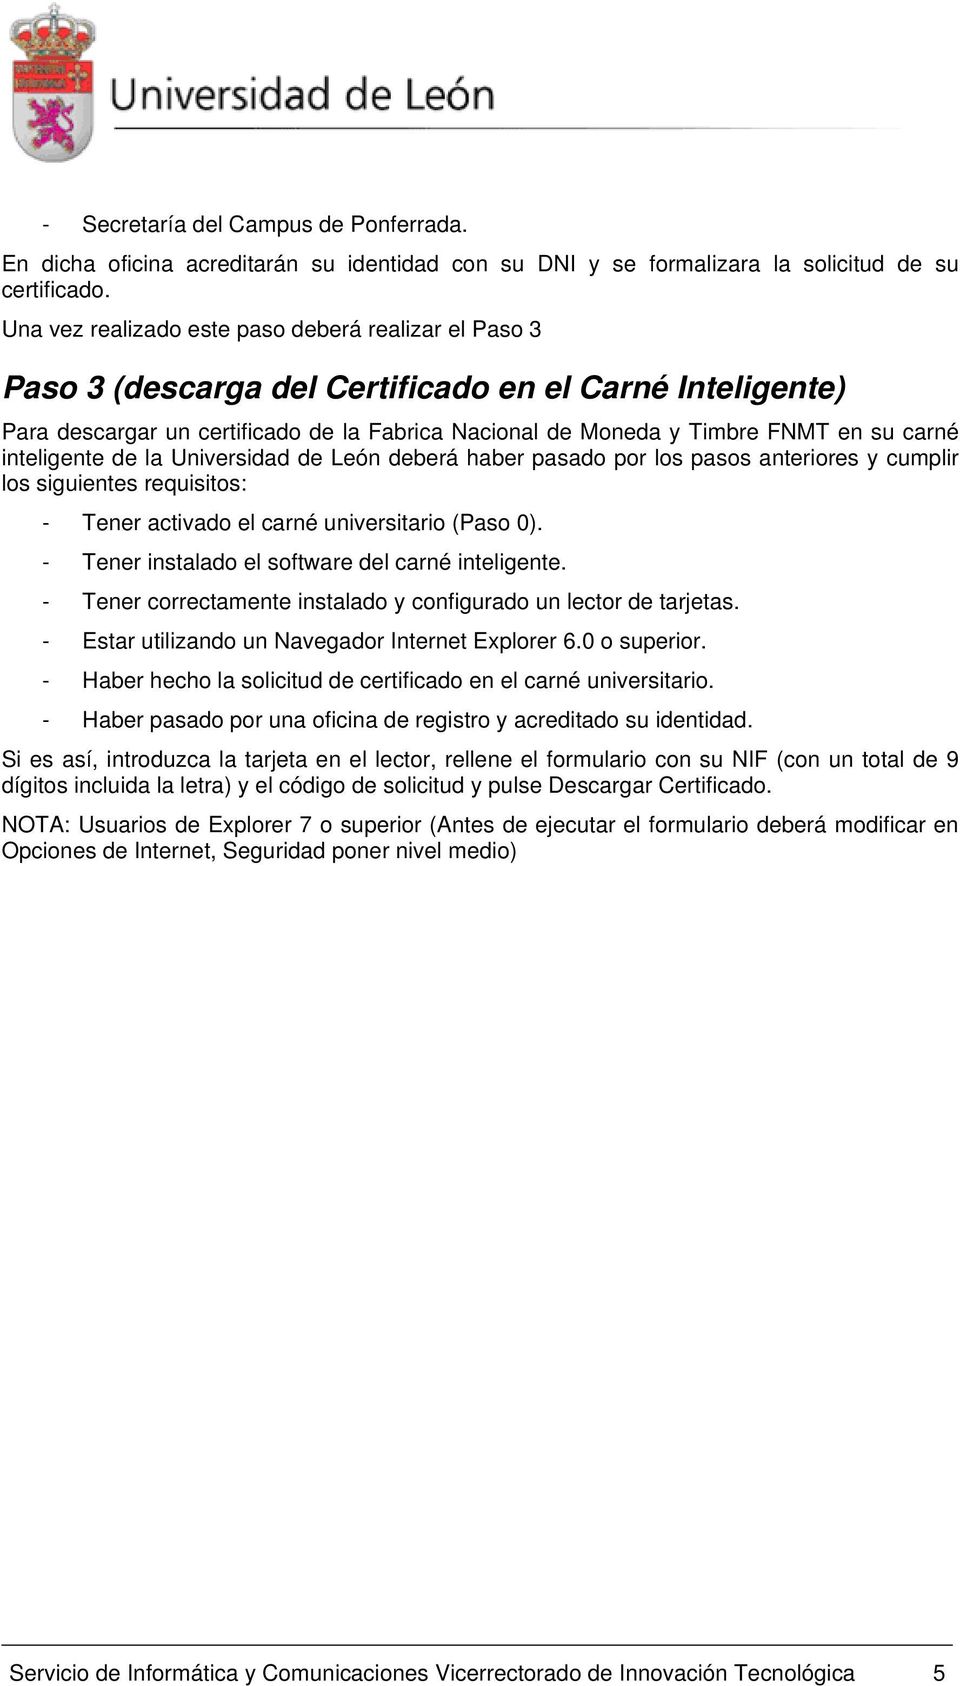 carné inteligente de la Universidad de León deberá haber pasado por los pasos anteriores y cumplir los siguientes requisitos: - Tener activado el carné universitario (Paso 0).